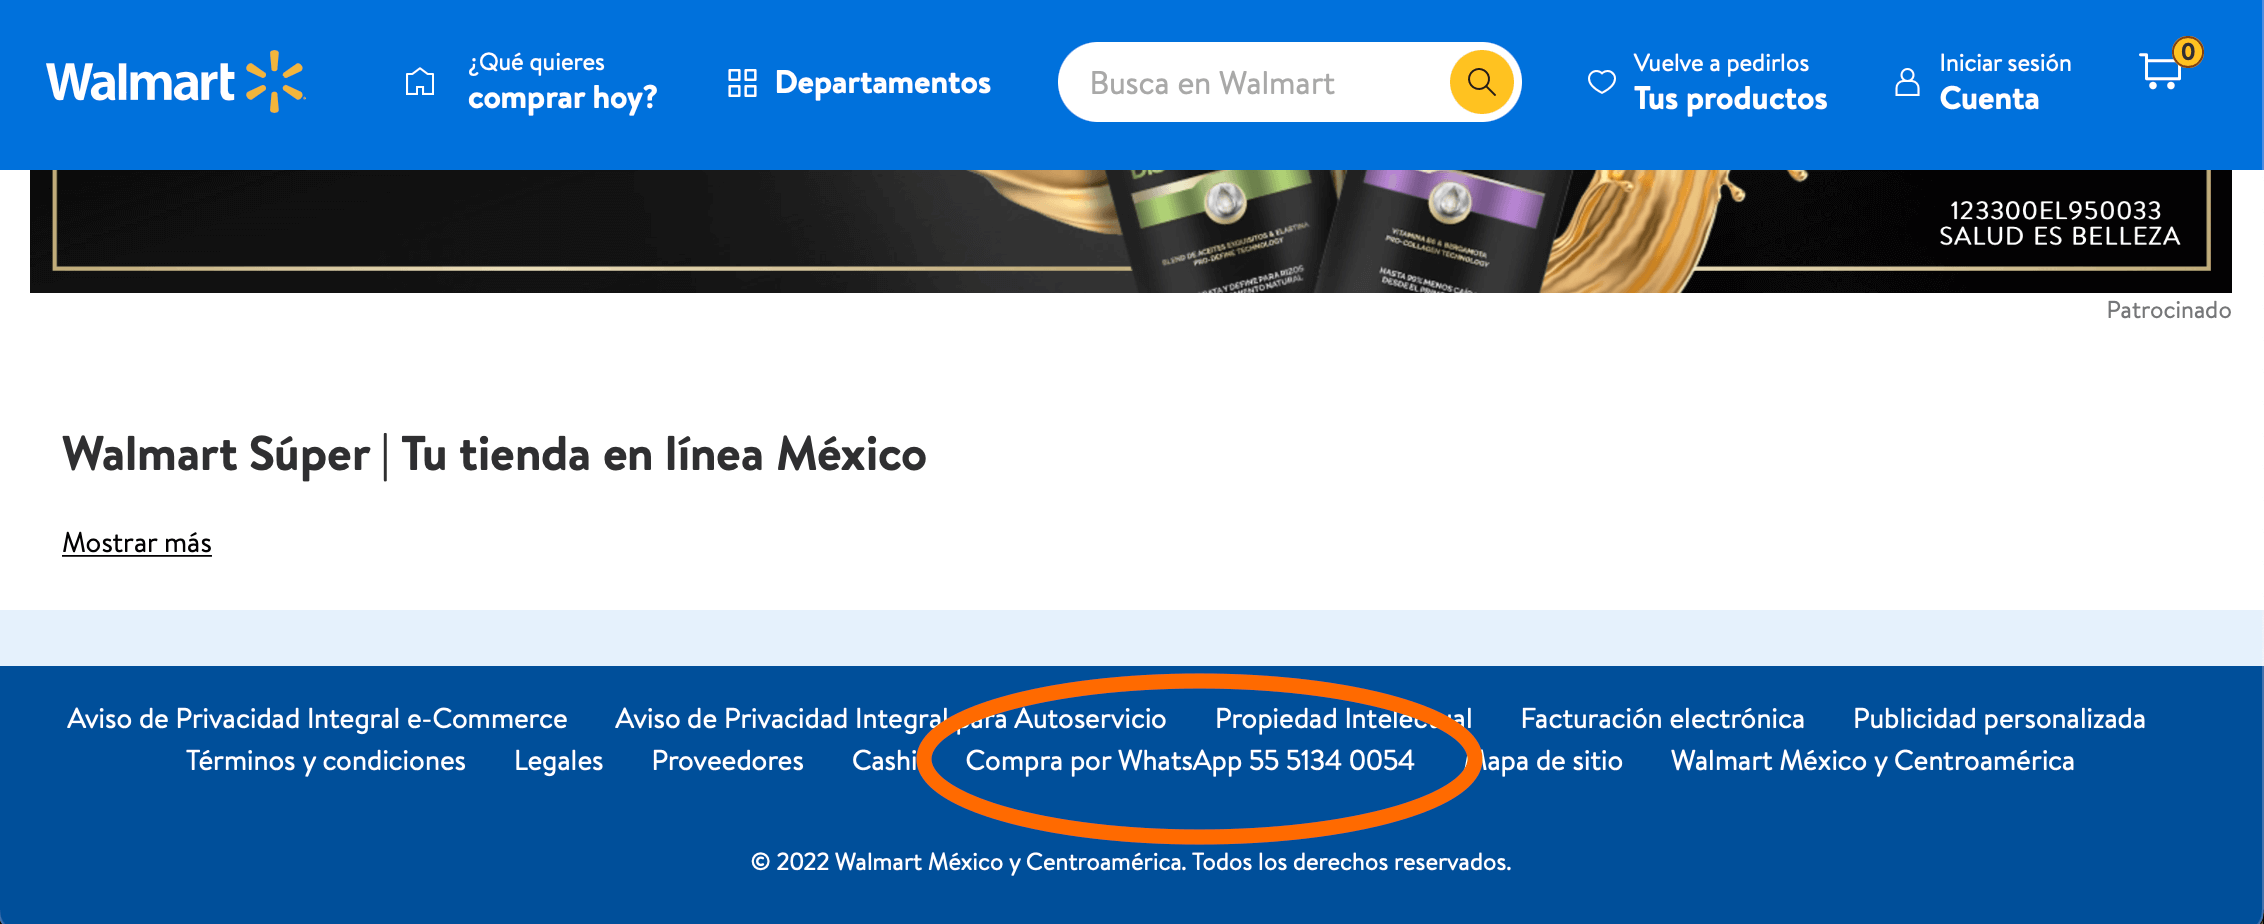 Ejemplo de integración de WhatsApp como canal de venta para tienda Walmart